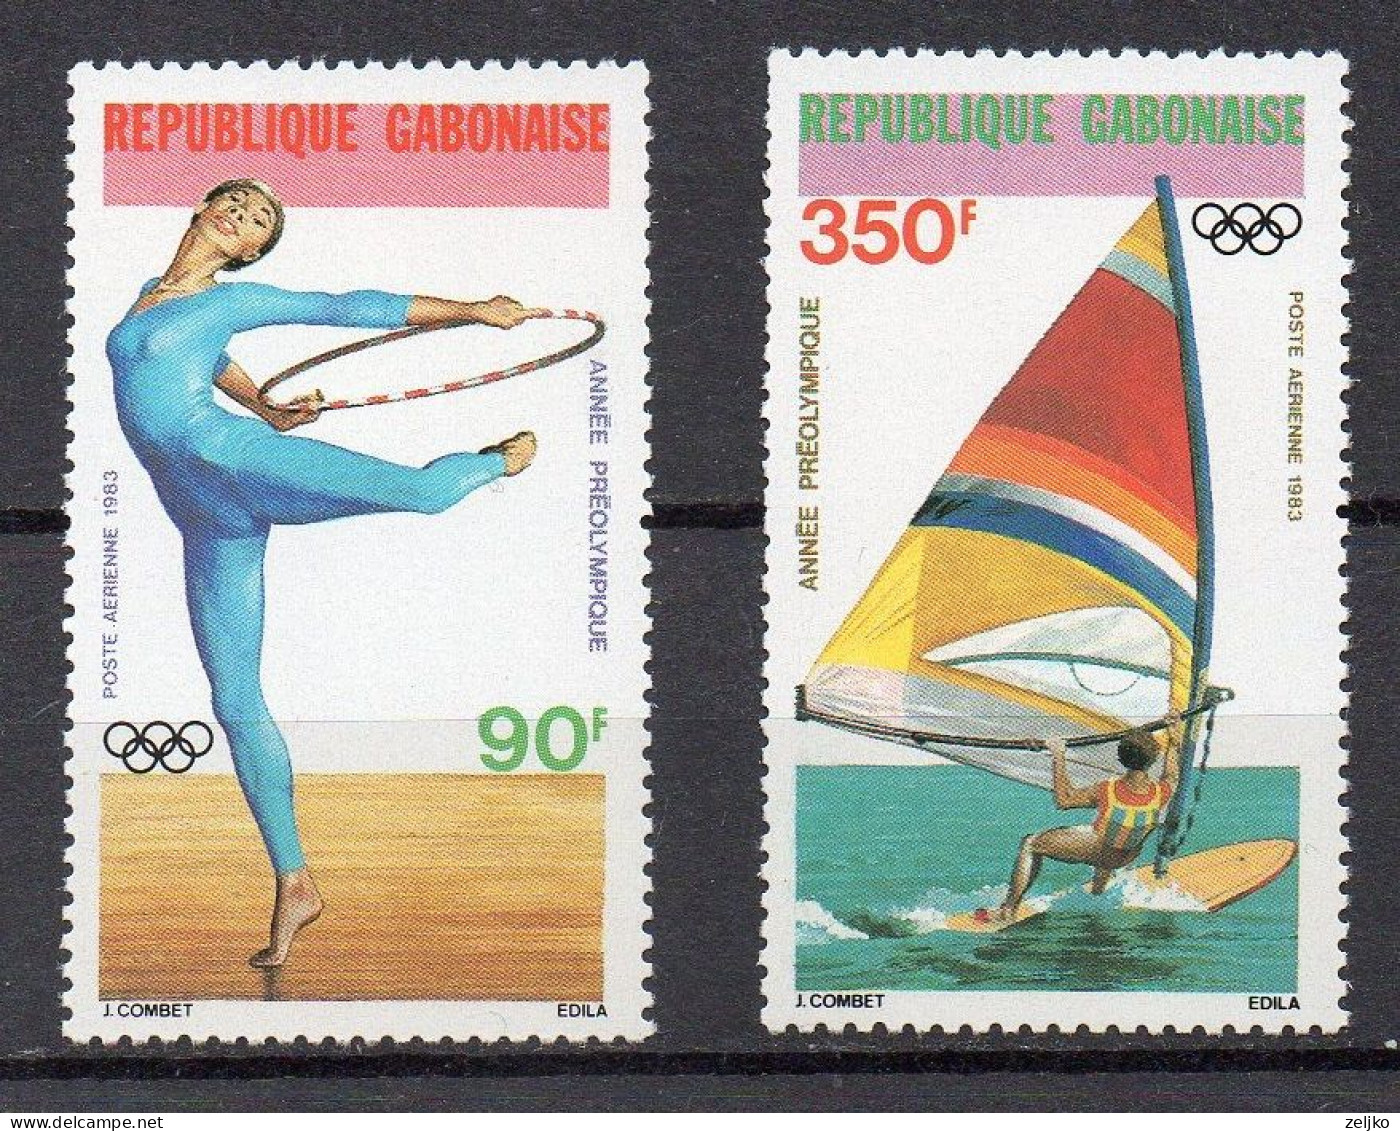 Gabon, MNH, 1983, Olympic Games LA 1984, Preolympic Year, Rhythmic Gymnastics, Sailing Windsurfing - Gymnastics